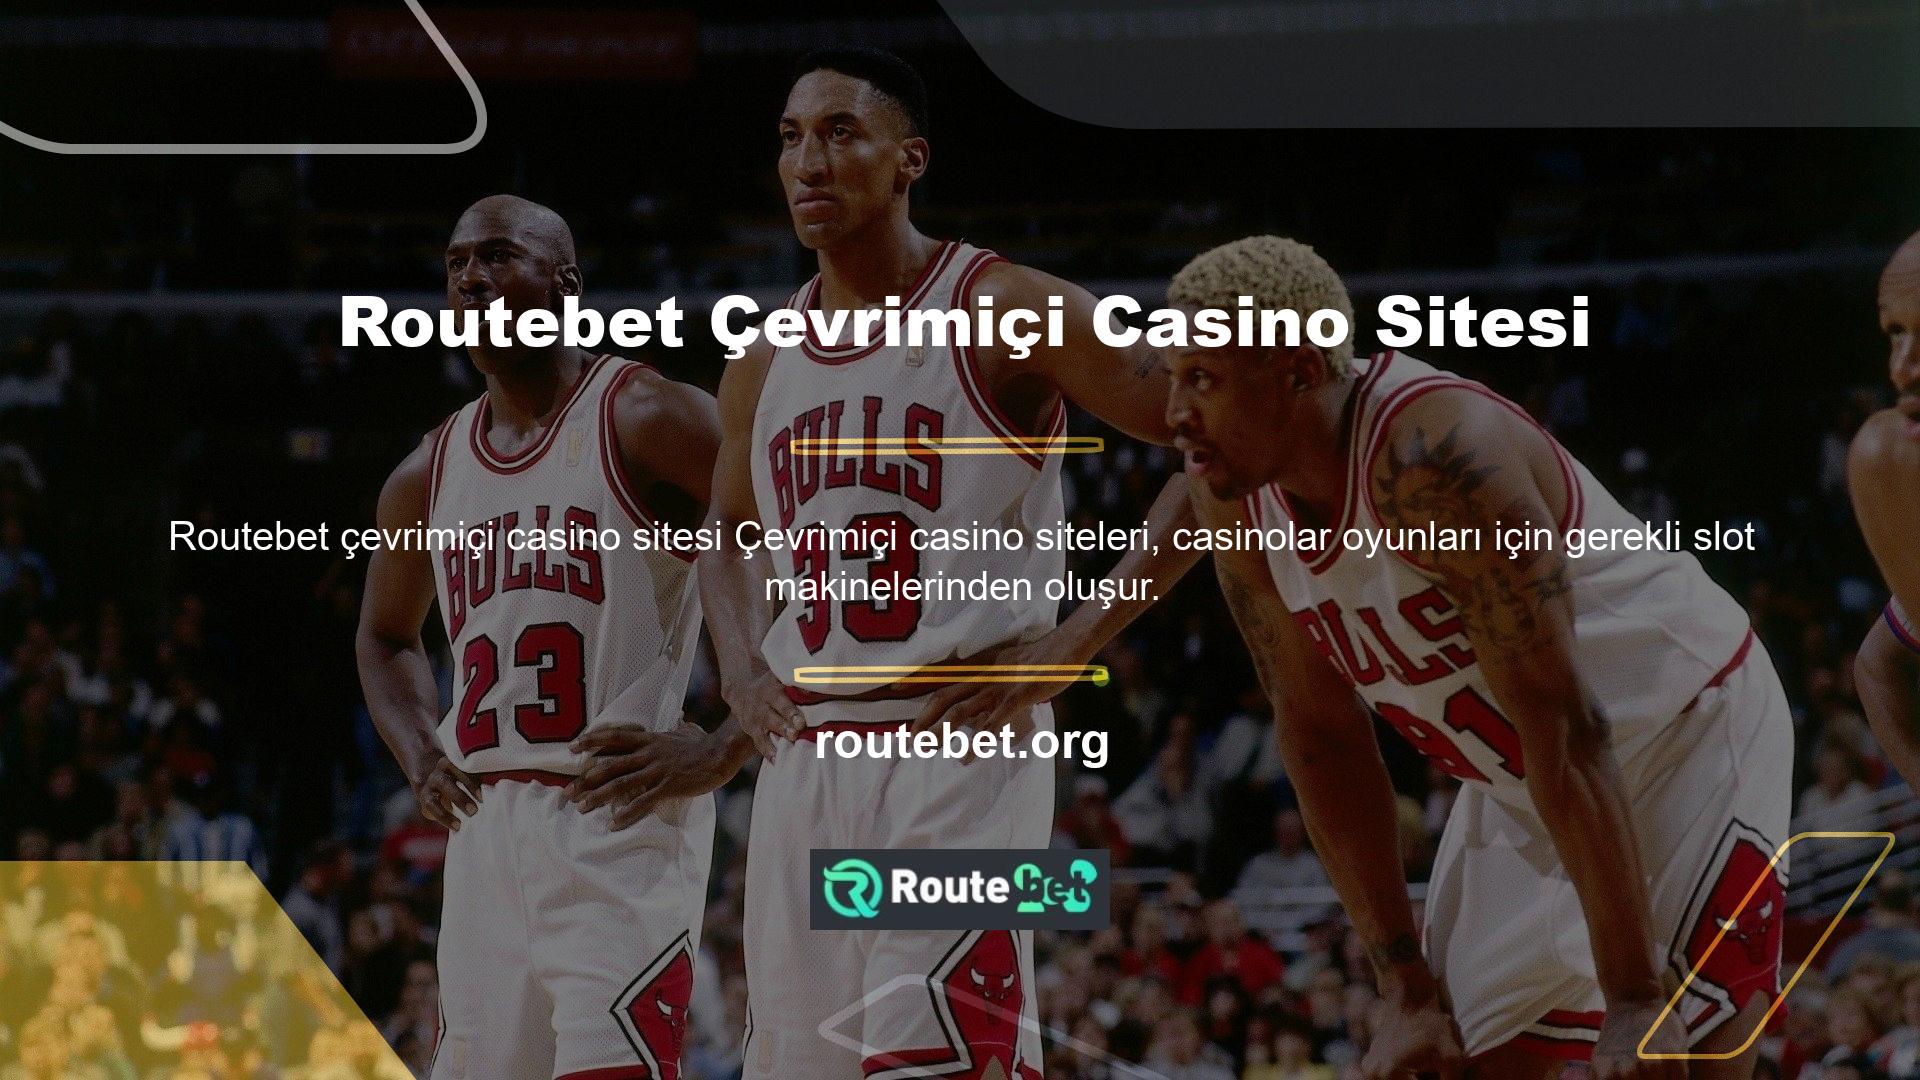 Routebet giriş bölümünden siteye giriş yapan tüm kullanıcılar, üyelik challenge oluştururken kazandıkları numuneler ile slot oyunlarının heyecanını yaşayabilecekler